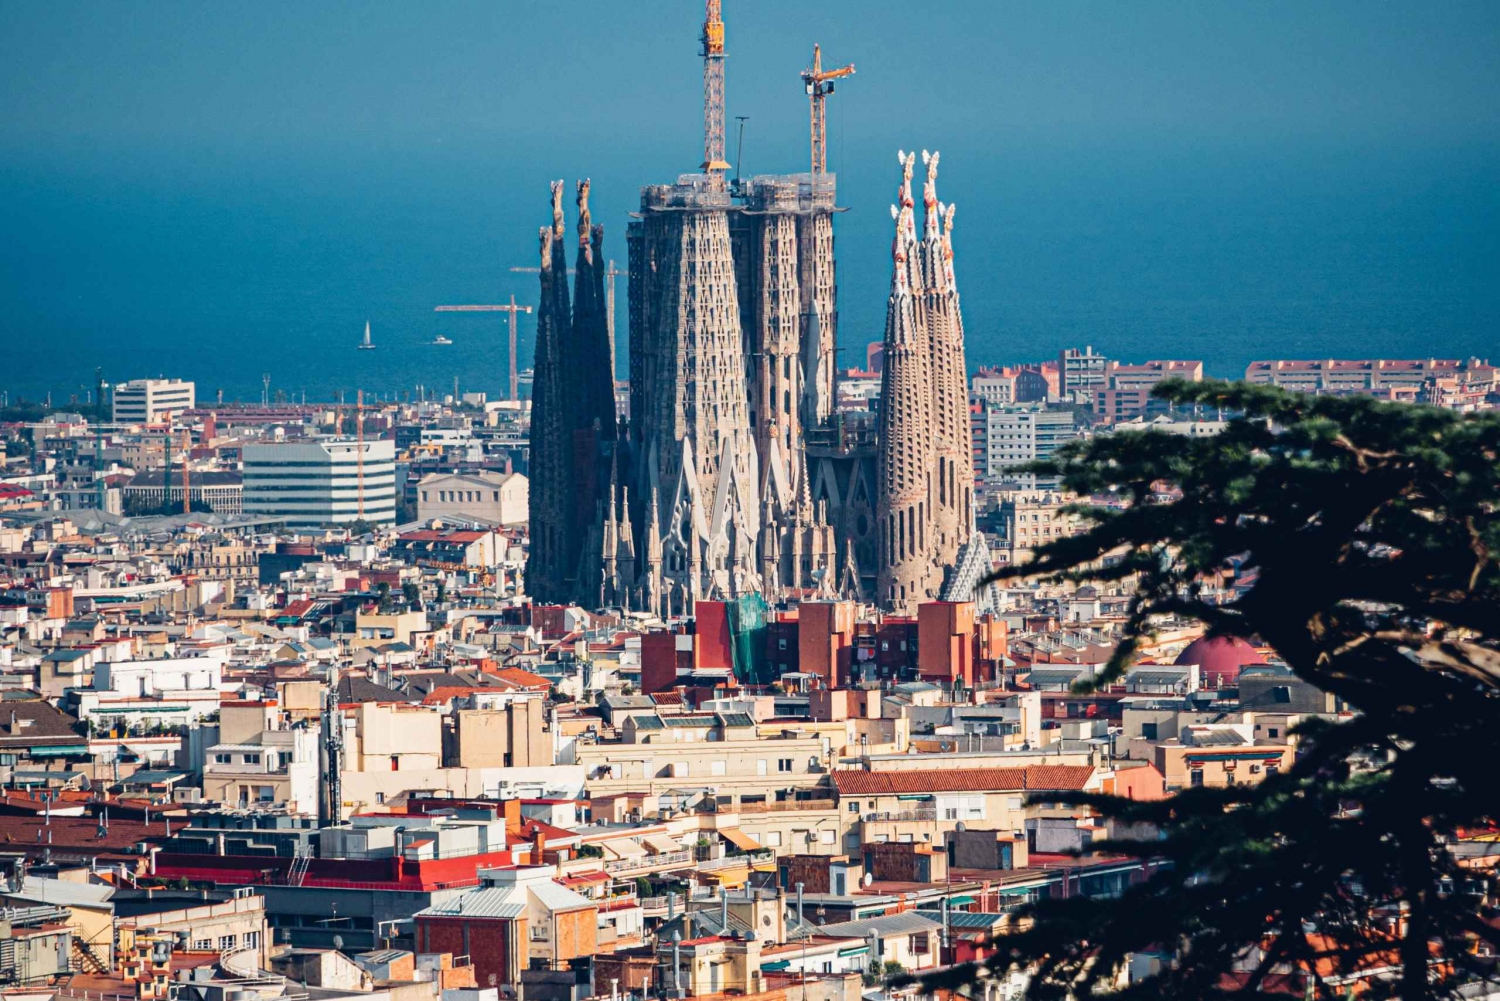 Biljetter till Sagrada Familia: Utforska Gaudís mästerverk